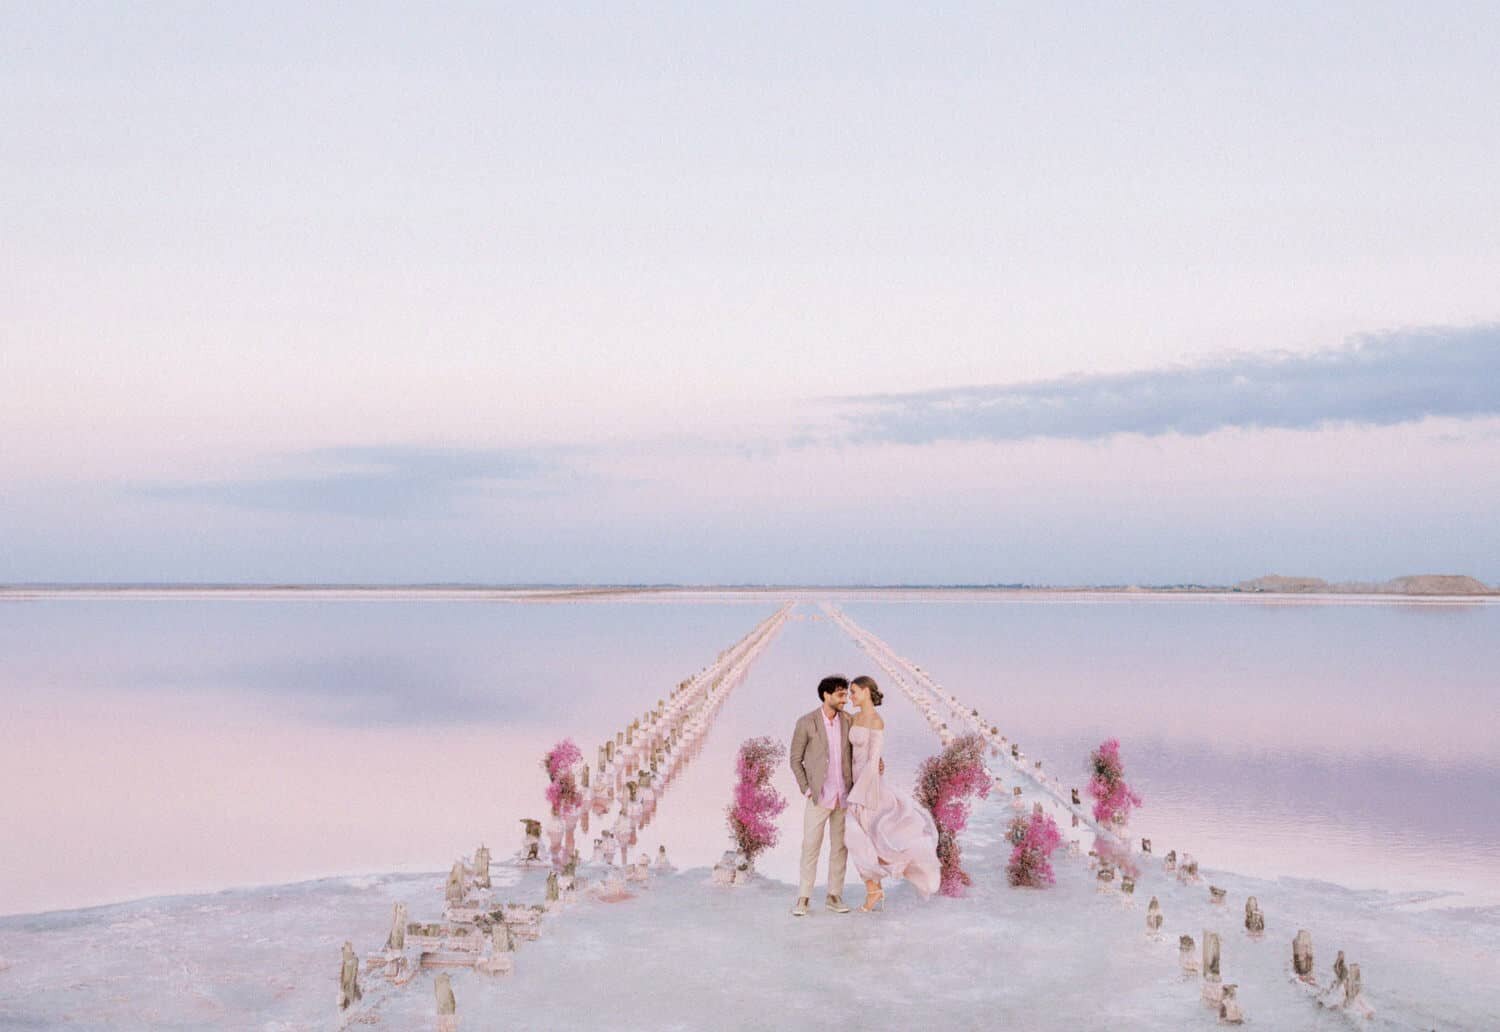 Blooming-hearts-pink-lake-editorial-by-Julia-Kaptelova-114